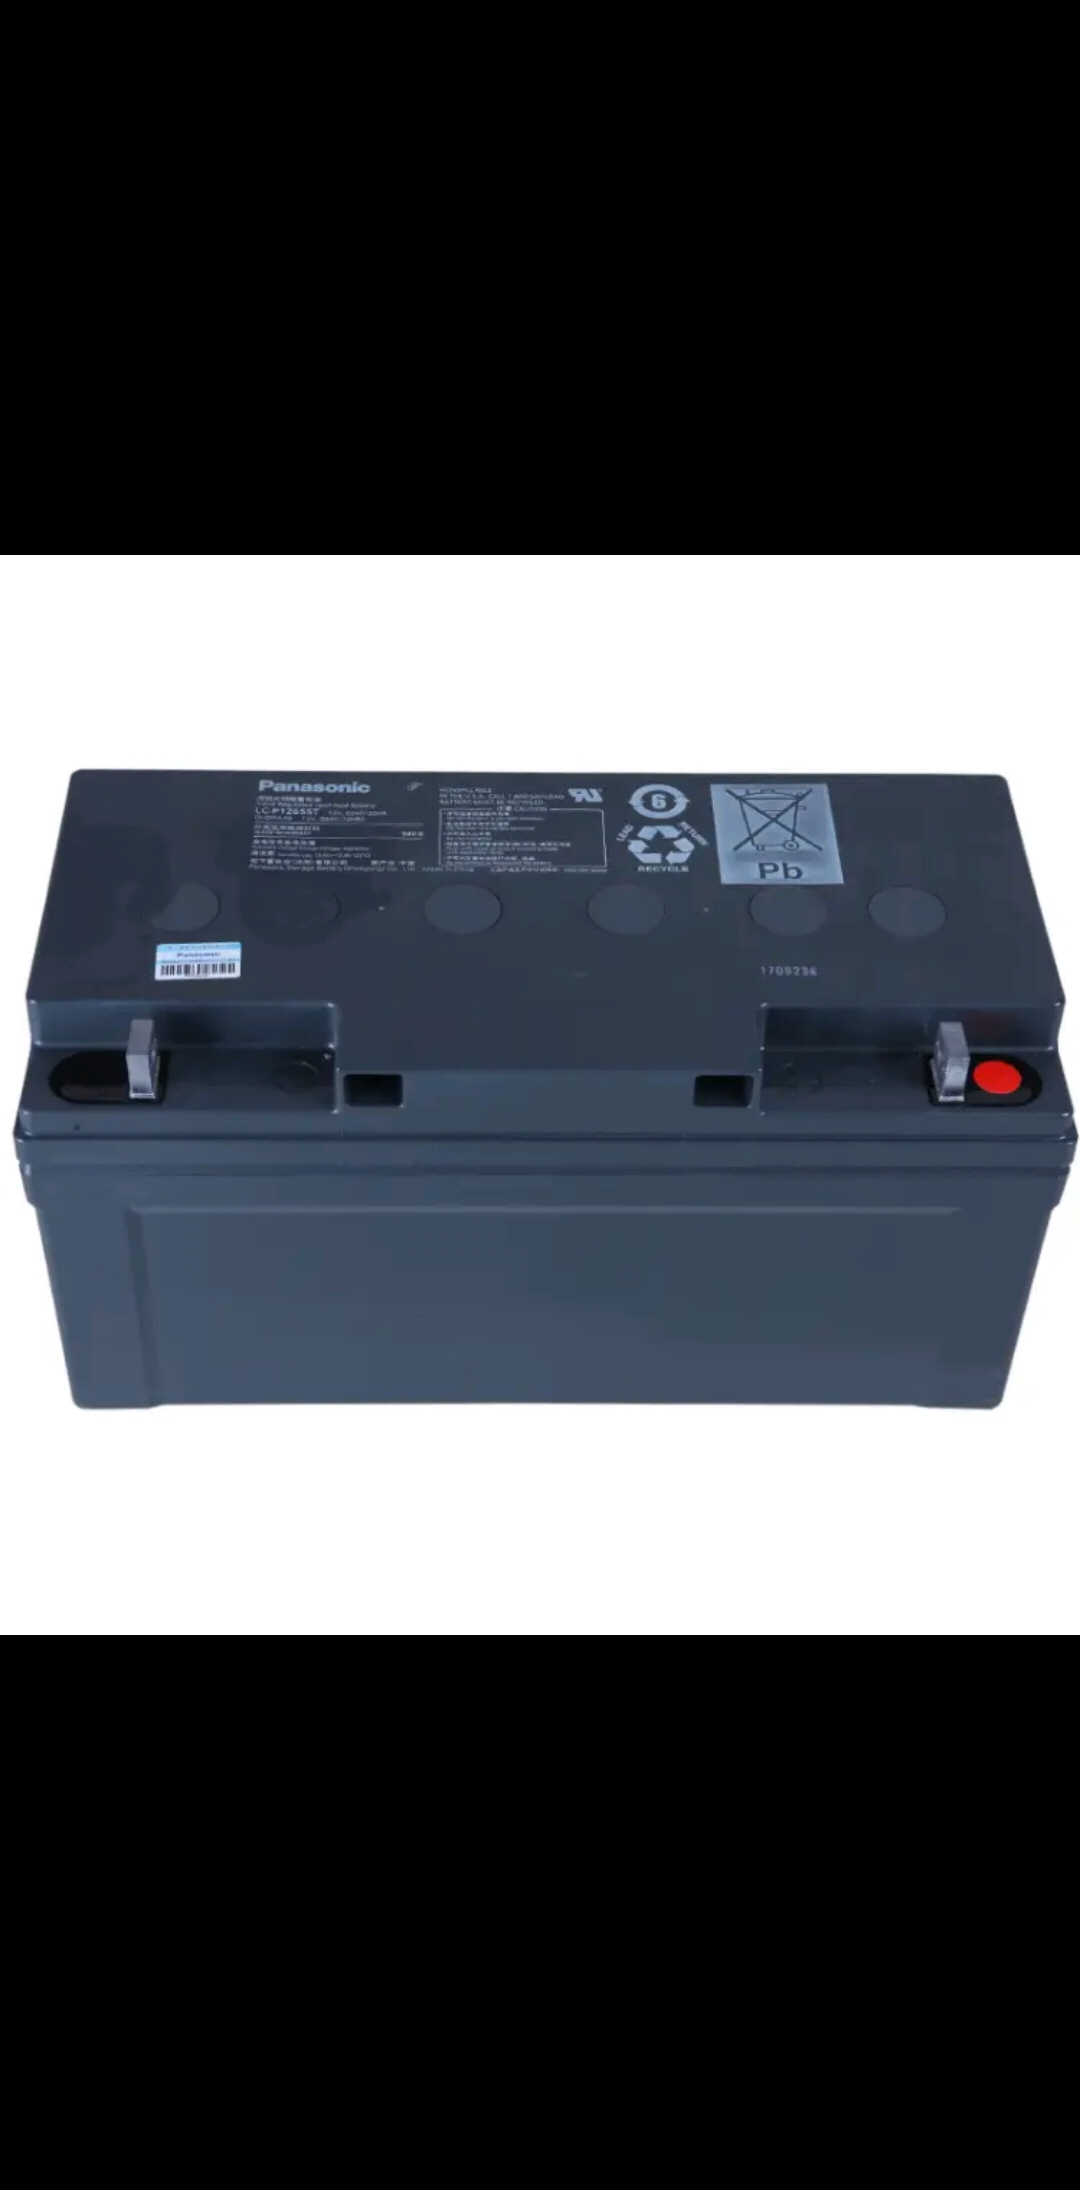 松下(Panasonic)UPS电源蓄电池LC-P1265ST免维护铅酸蓄电池12V65AH 工艺精湛,性能强劲,零利润赚信誉,厂家供货渠道,价格在实惠不过了